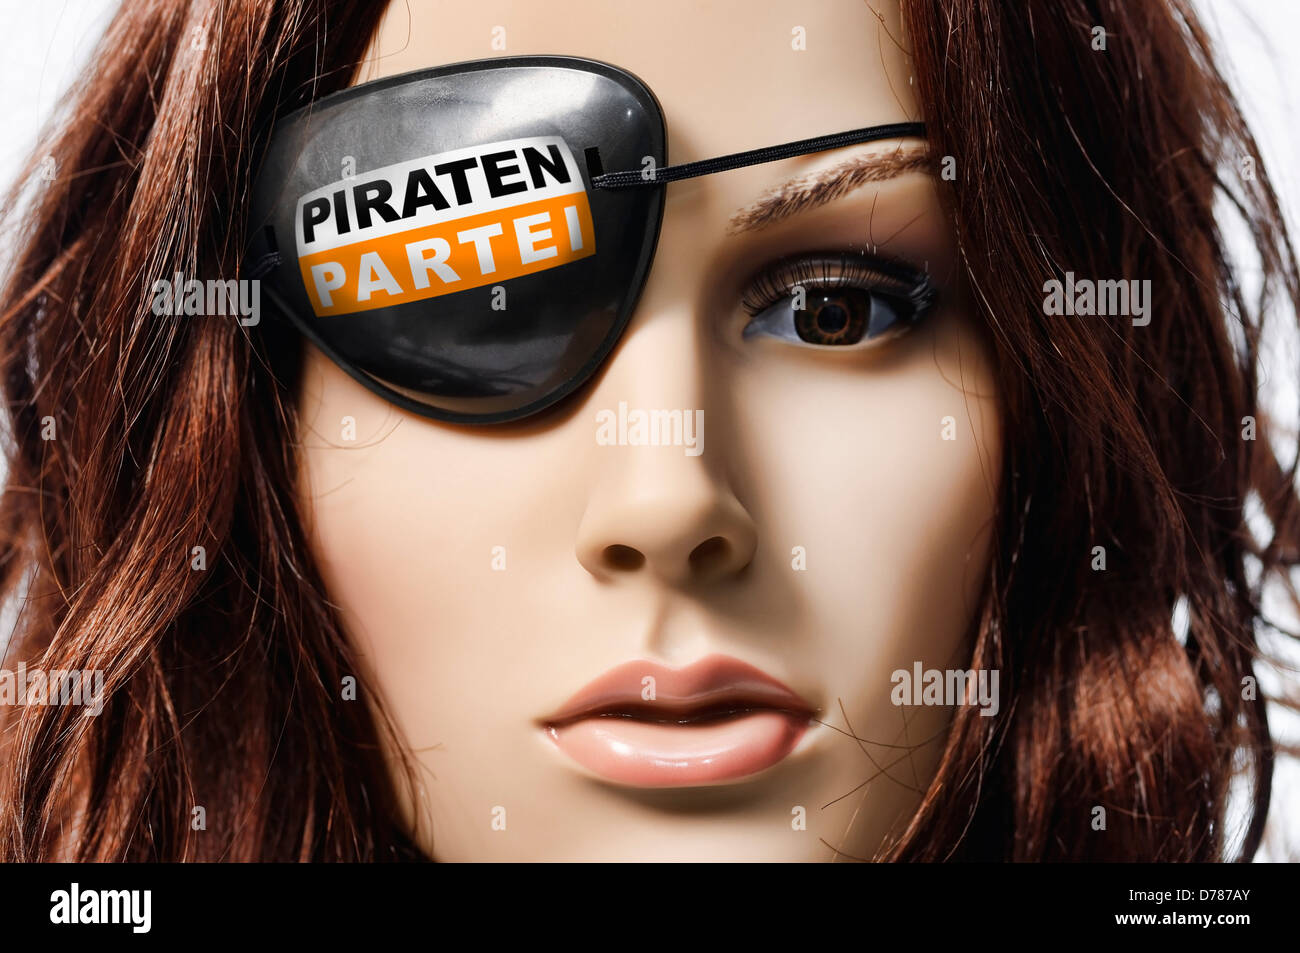 Puppe mit Piraten Augenklappe, symbolische Foto Piratenpartei Stockfoto